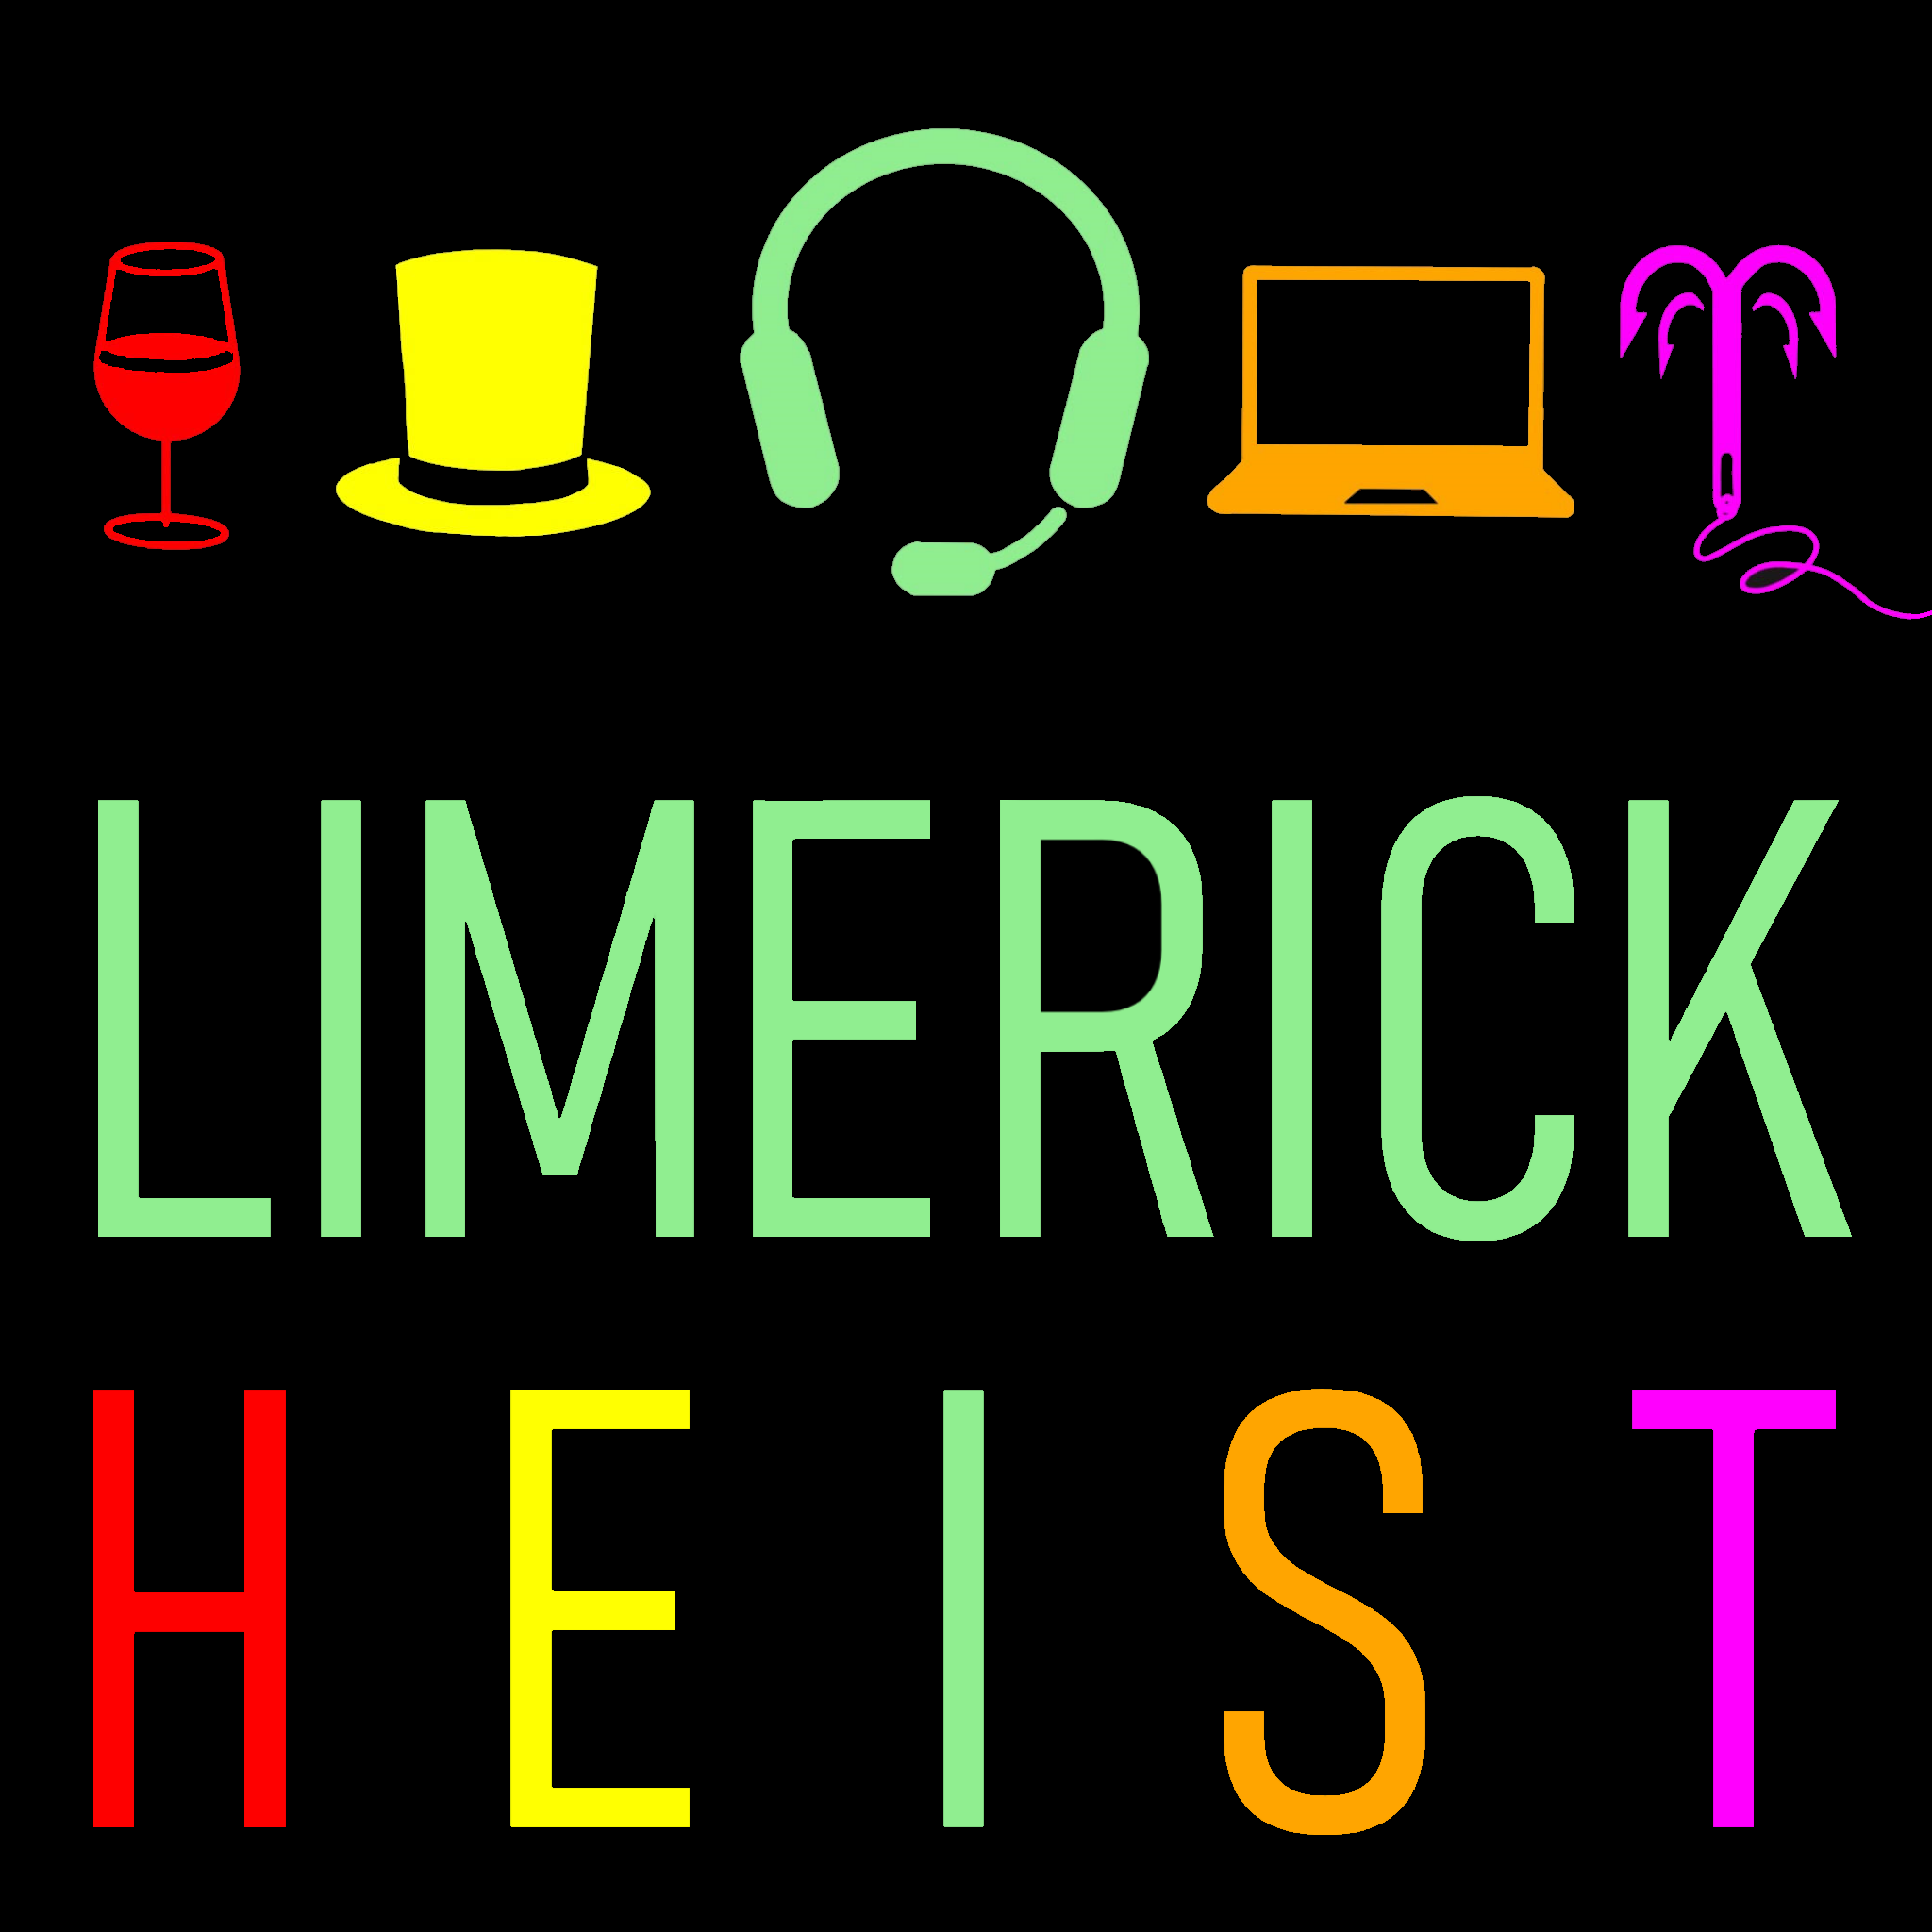 Cover art for Limerick Heist